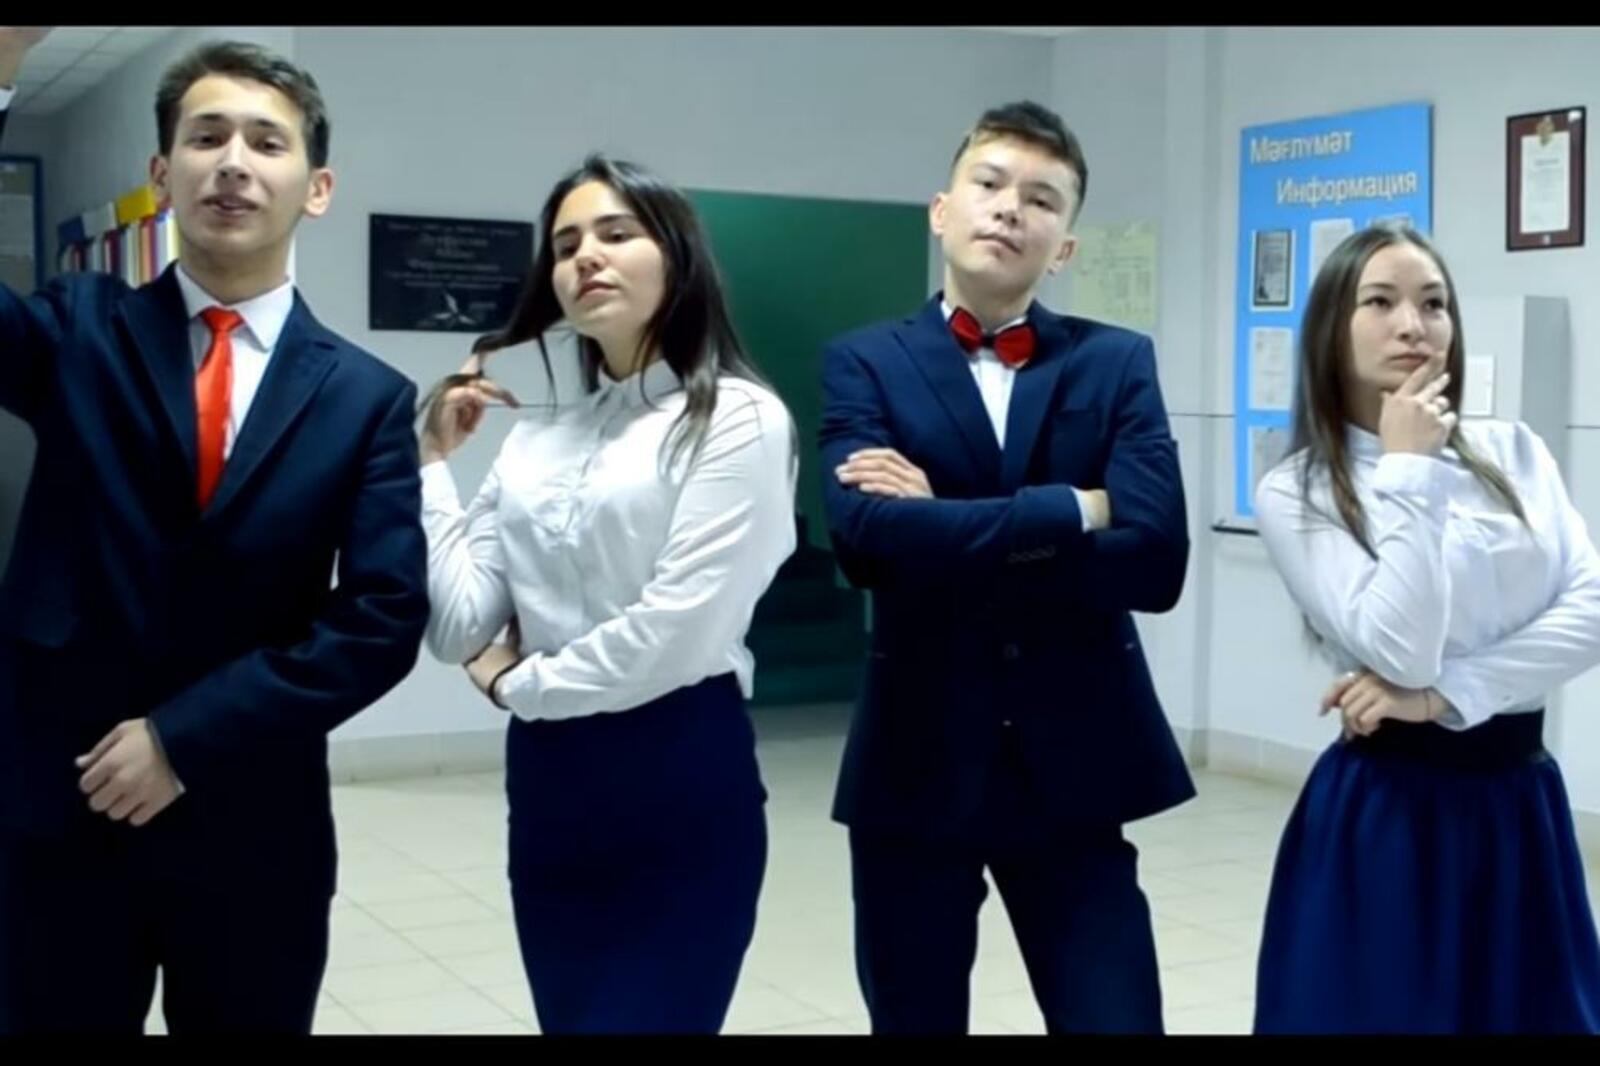 скриншот видео с сайта https://testdrive.urfu.ru